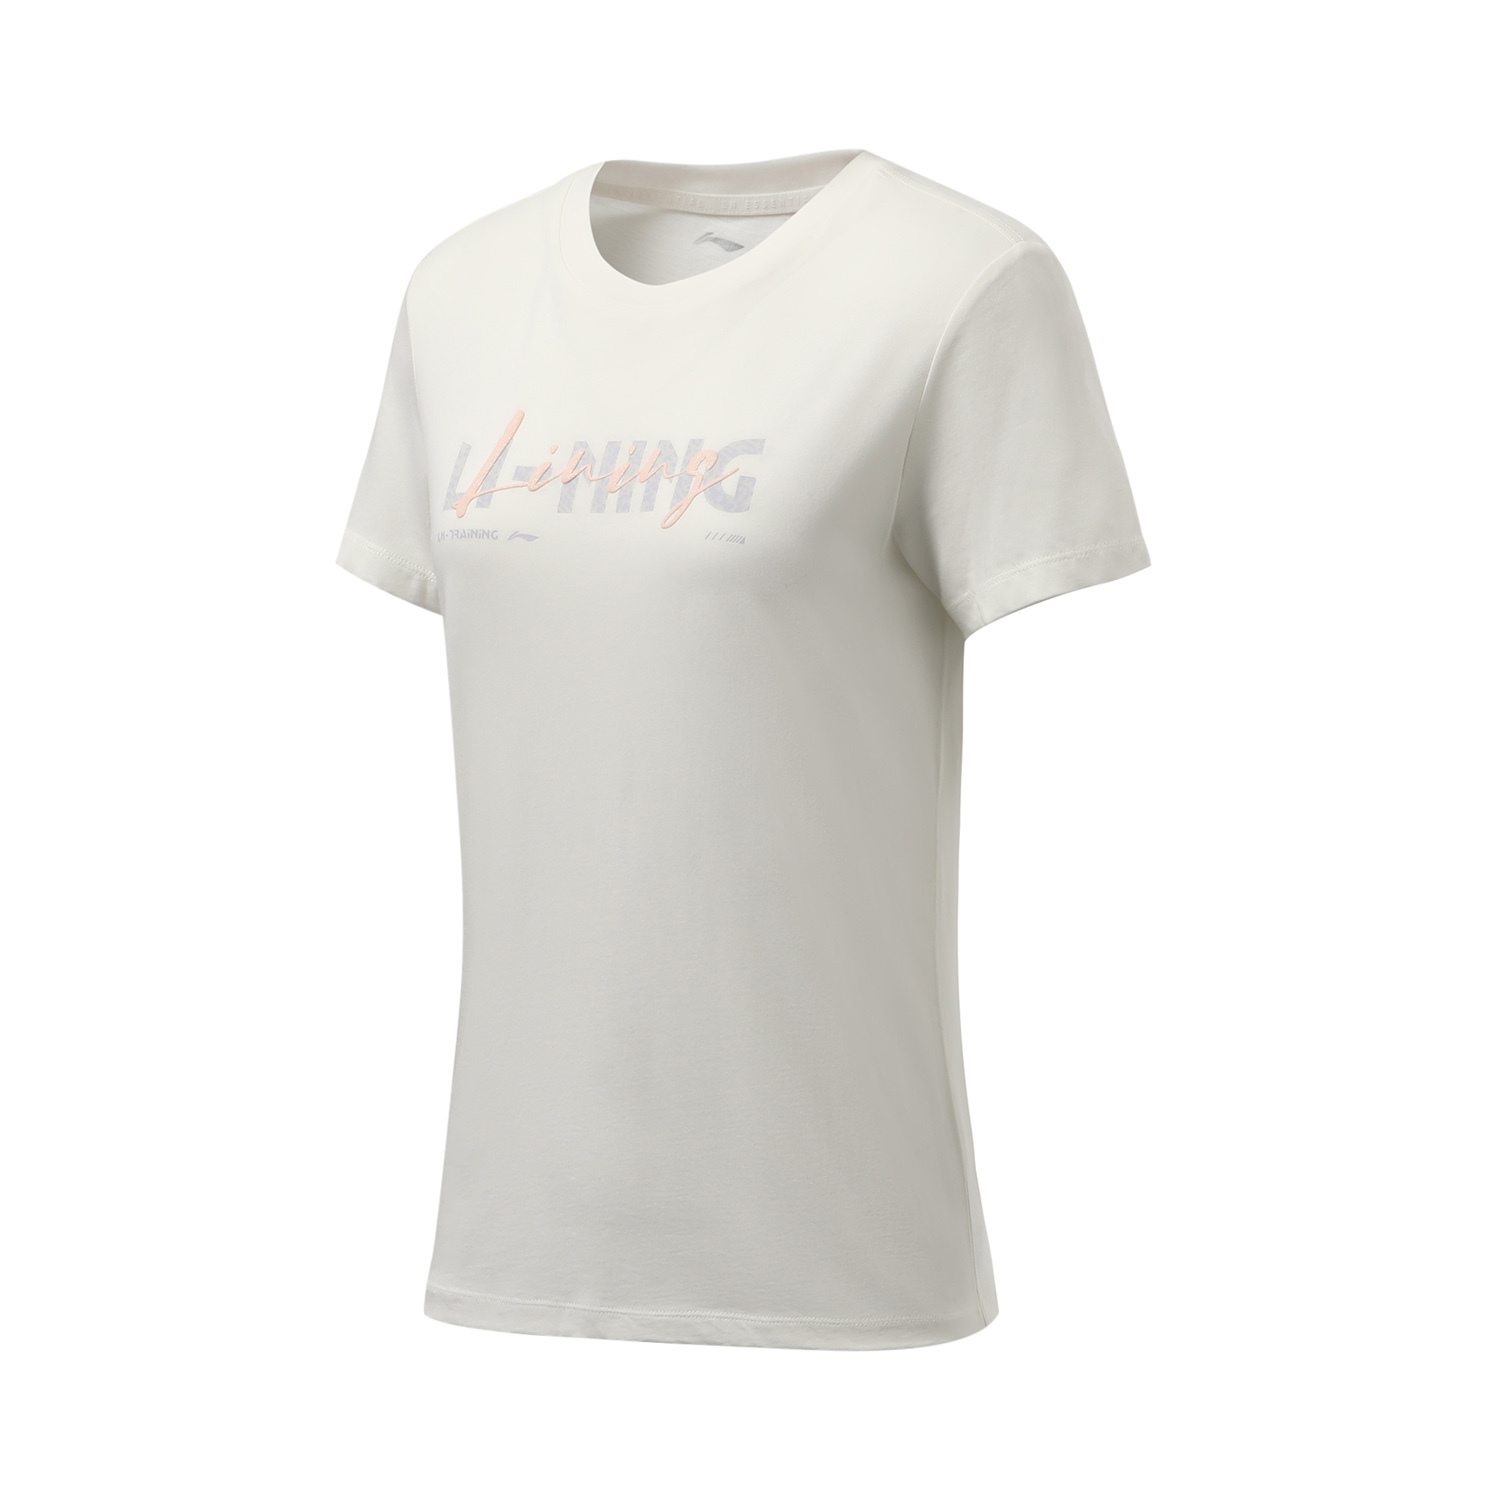 LI-NING 李宁 团购系列 女 短袖T恤 香槟白 ATSR290-1